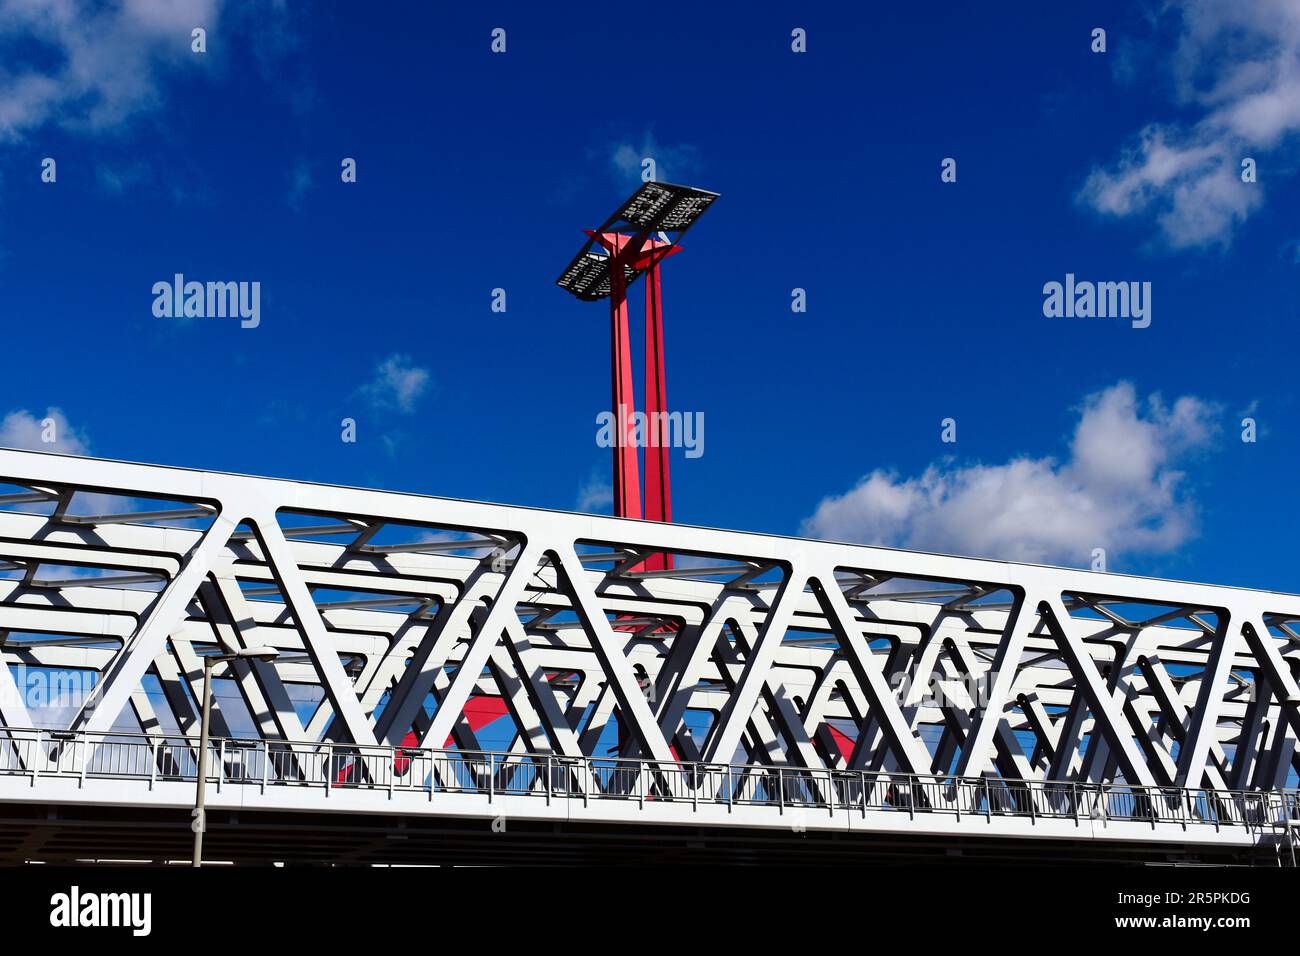 ponte ferroviario in acciaio in vista prospettica. torre in acciaio rosso con pannelli solari. cielo blu con nuvole bianche. travi a traliccio con elementi triangolari Foto Stock